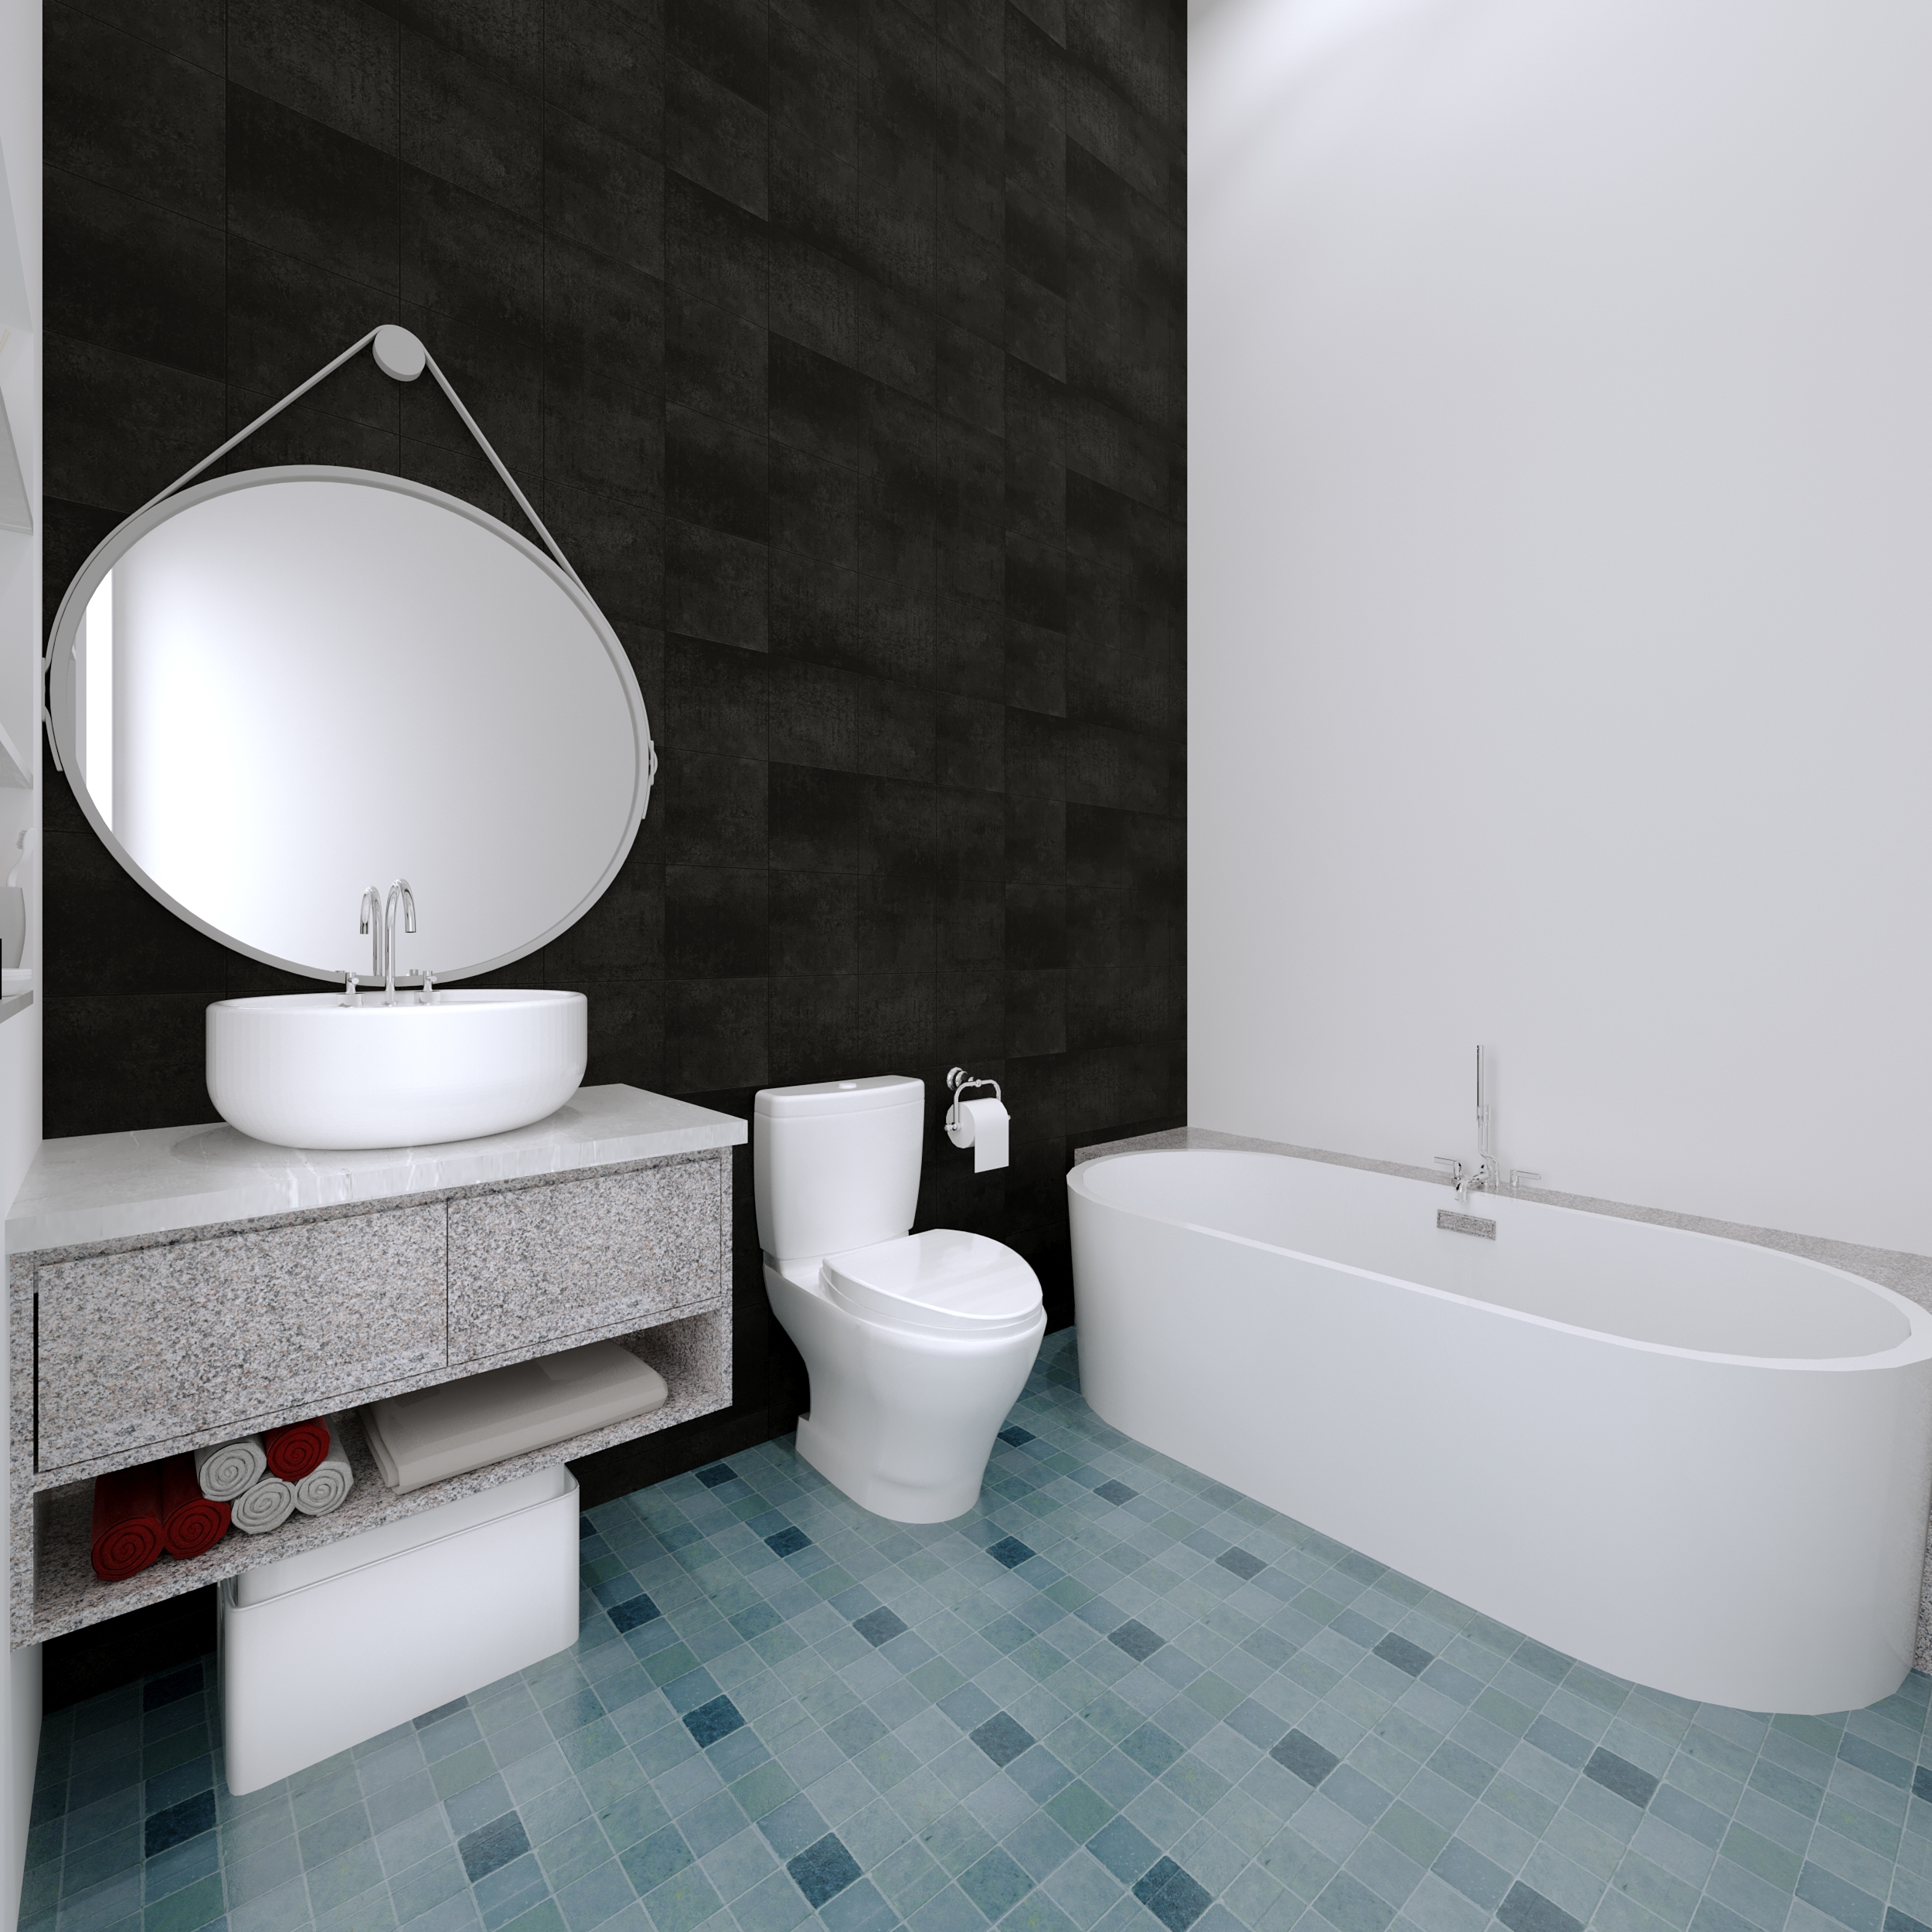 https://0901.nccdn.net/4_2/000/000/057/fca/lewis-lake-rendering_bathroom.jpg